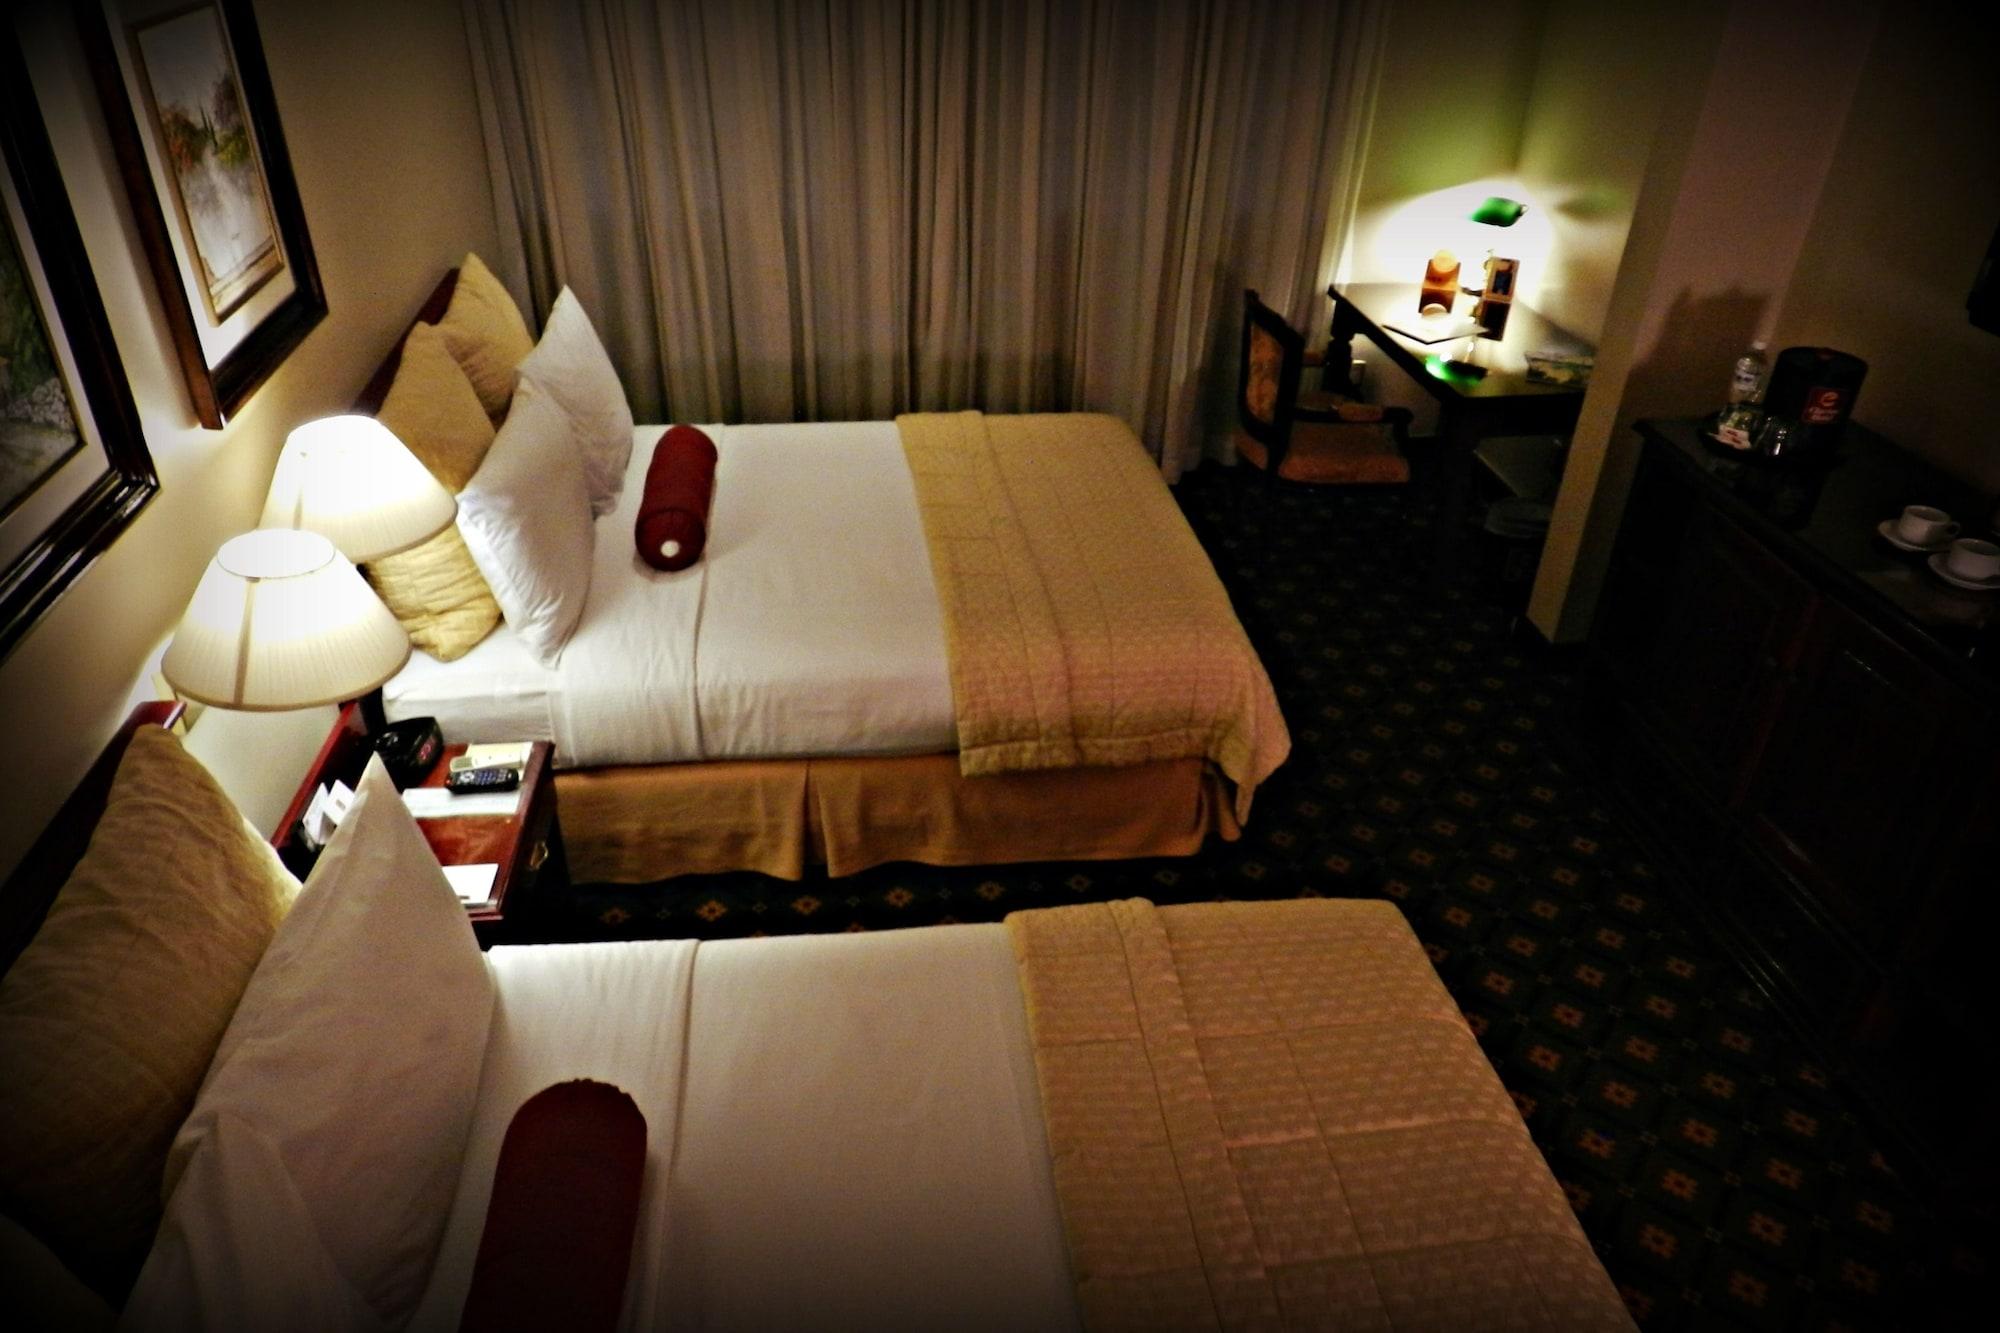 Clarion Hotel Сан-Педро-Сула Экстерьер фото